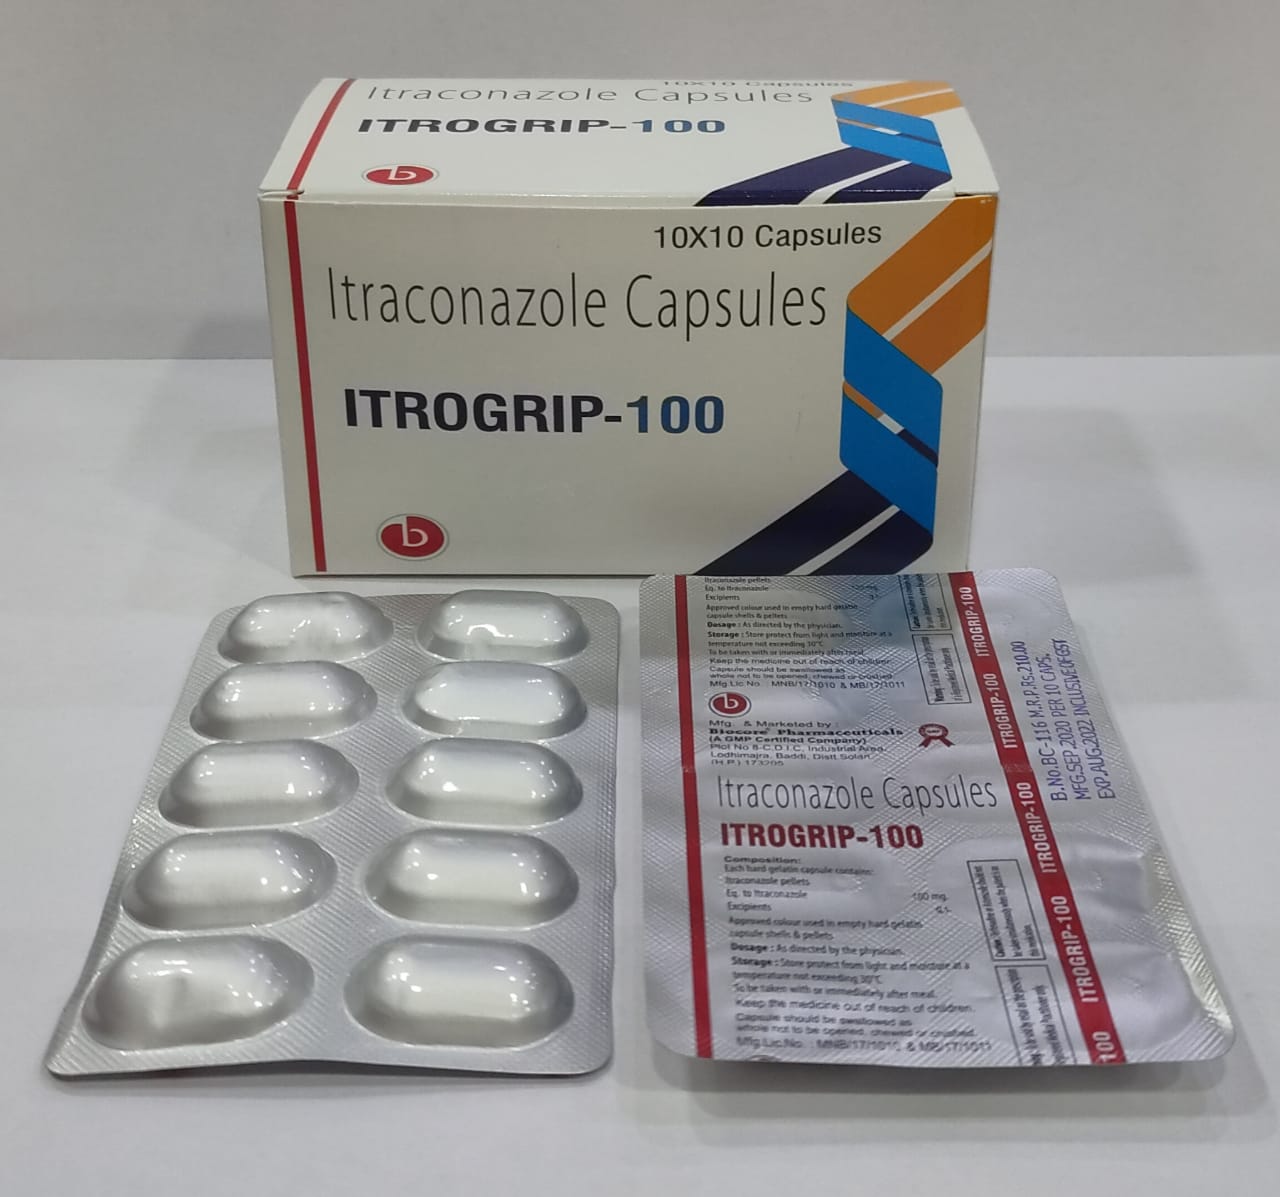 ITROGRIP-100 Capsules